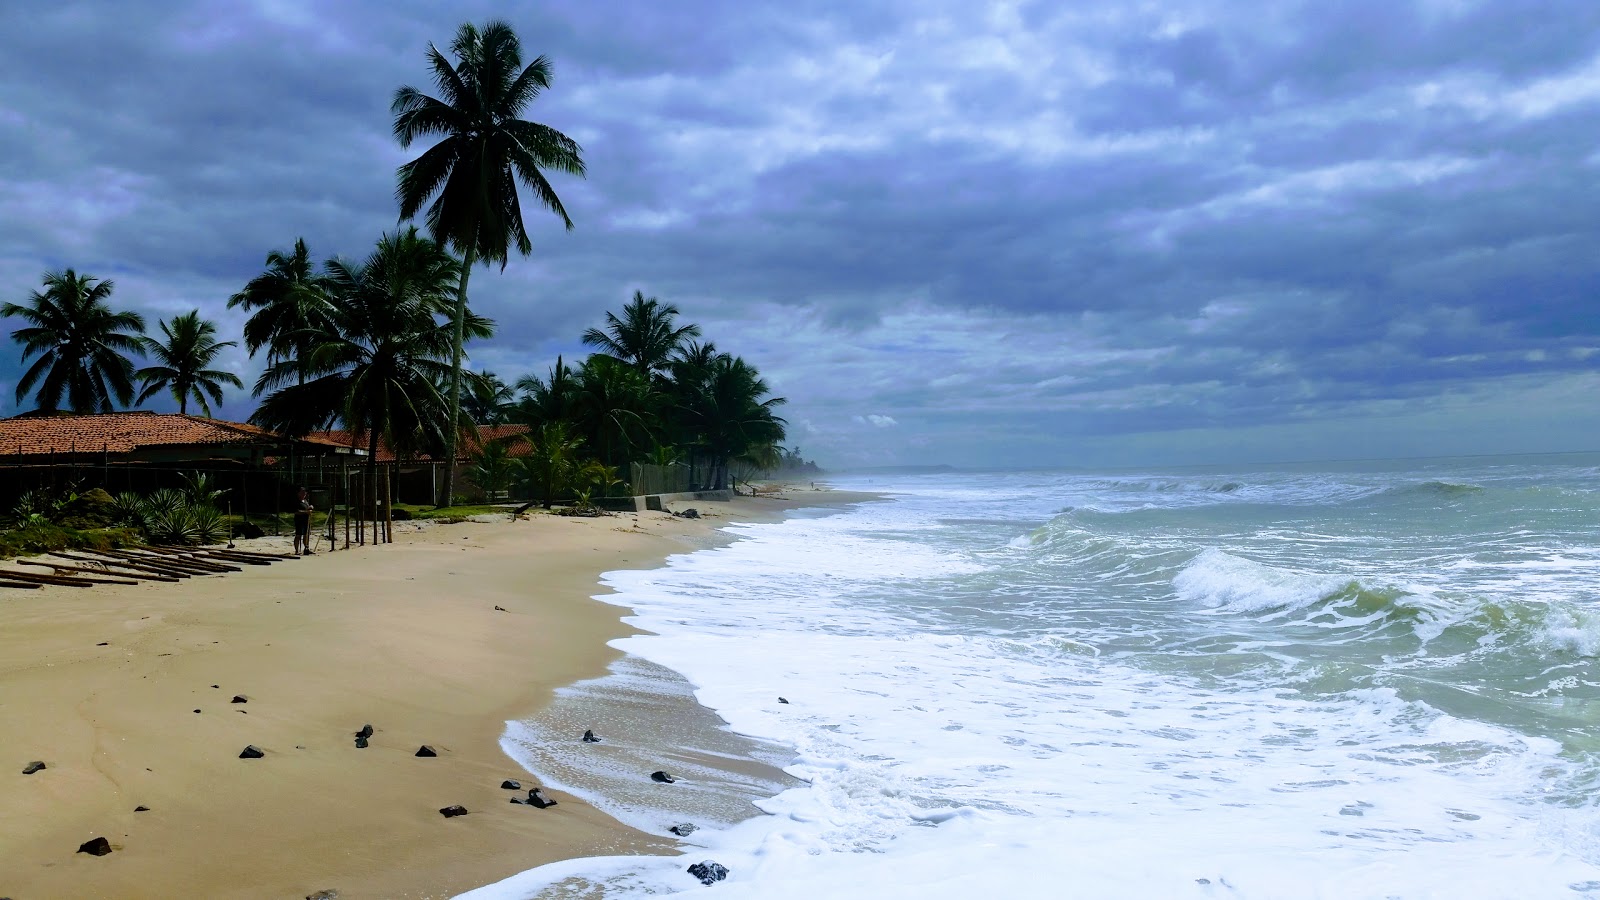 Fotografie cu Praia do Norte - locul popular printre cunoscătorii de relaxare